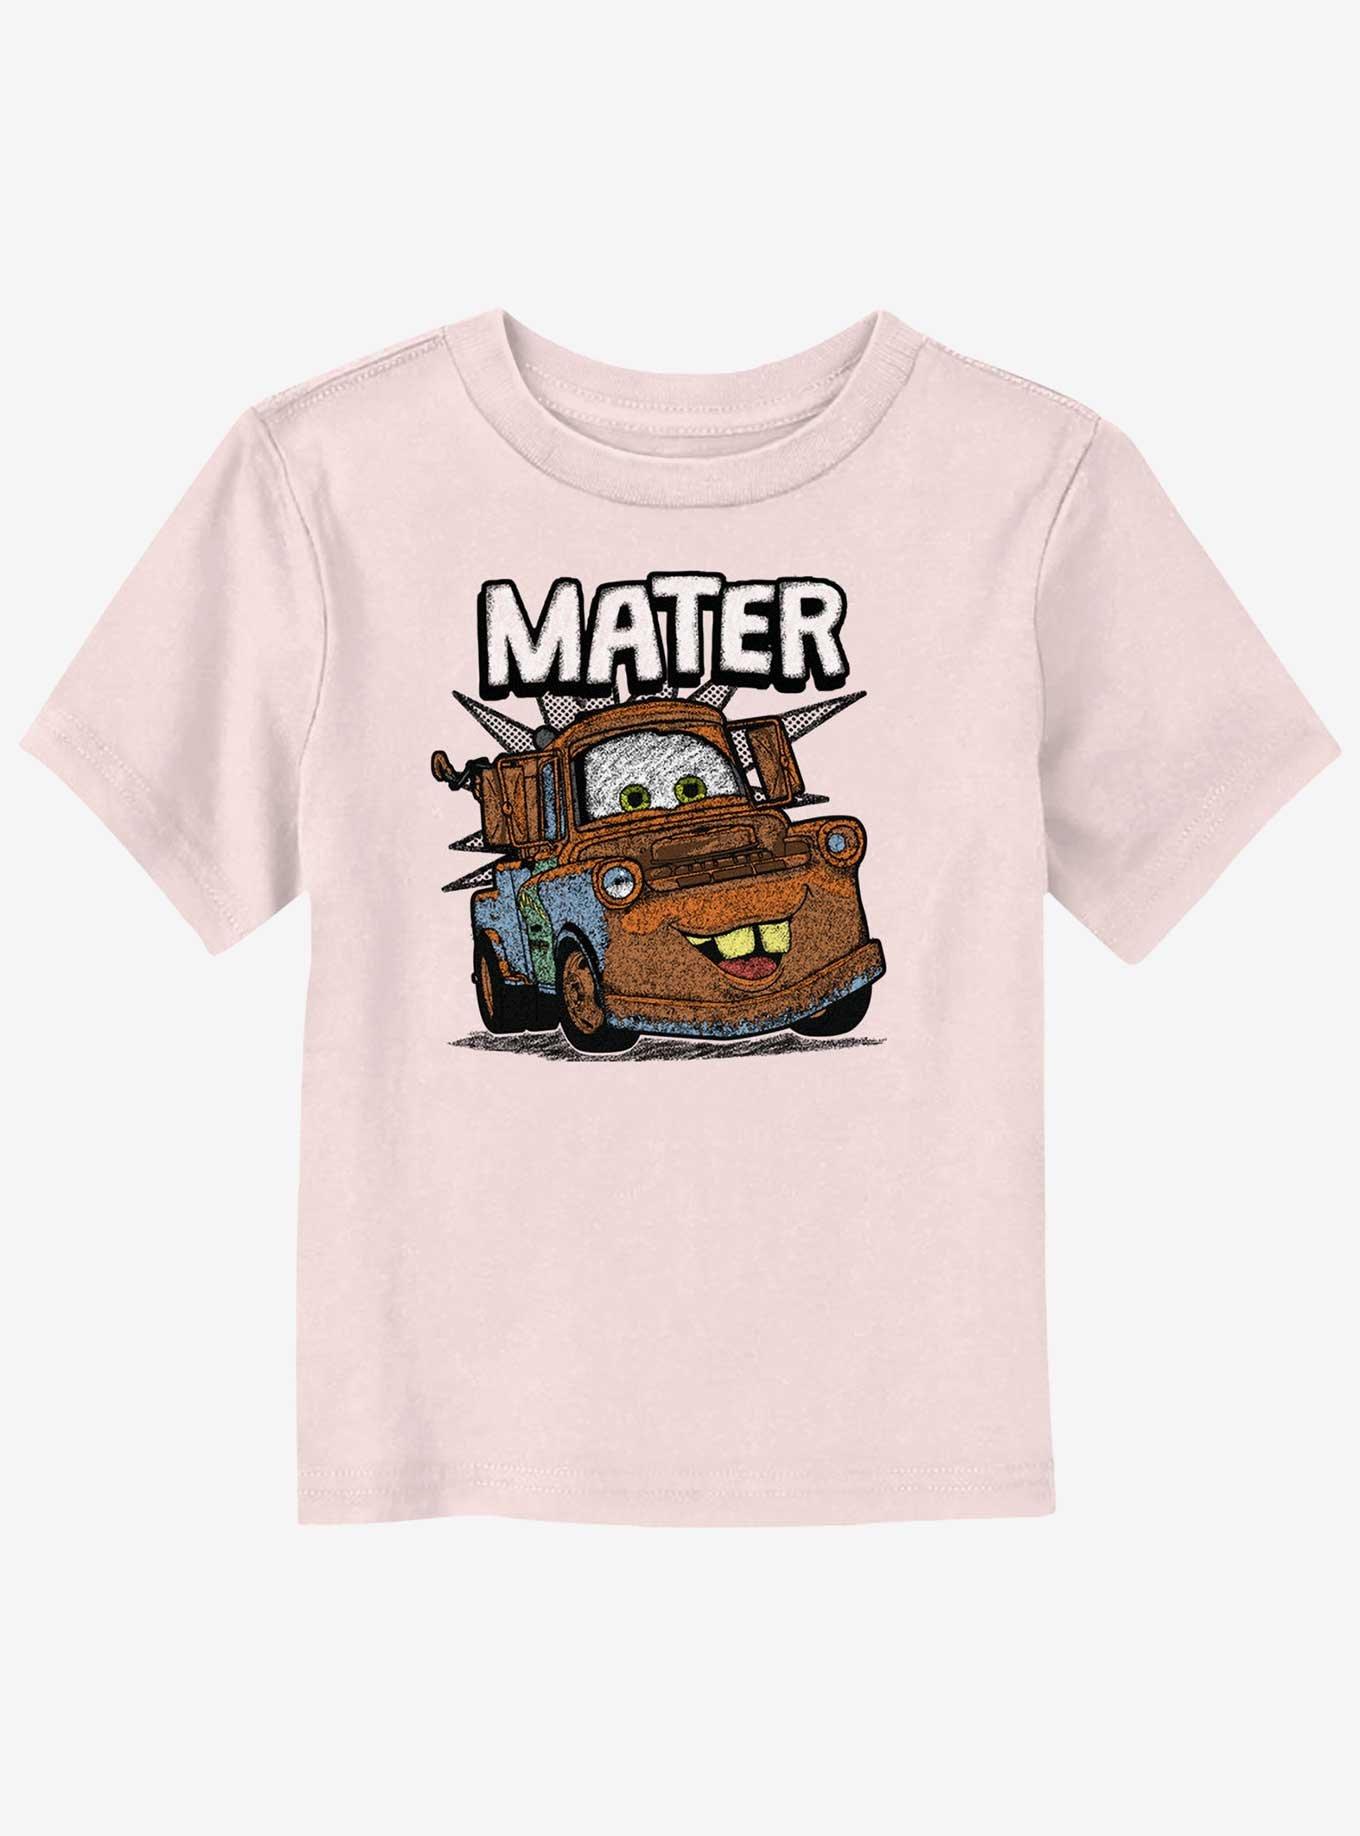 Disney Pixar Cars Tow Mater Toddler T-Shirt, LIGHT PINK, hi-res